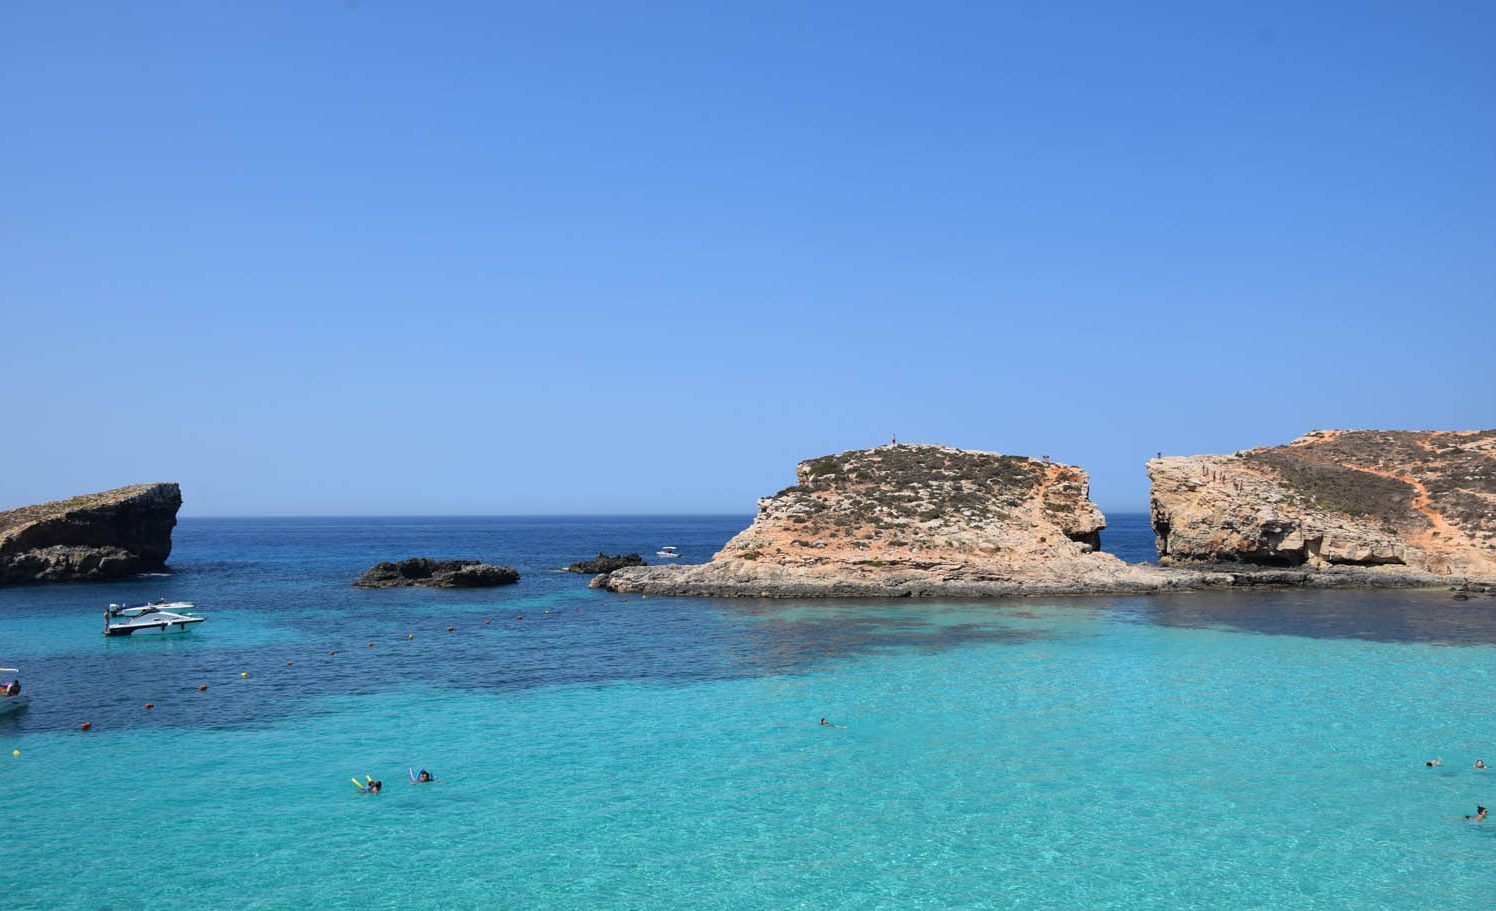 VERY blue day in Malta - Blue Lagoon - Comino |  June 2016